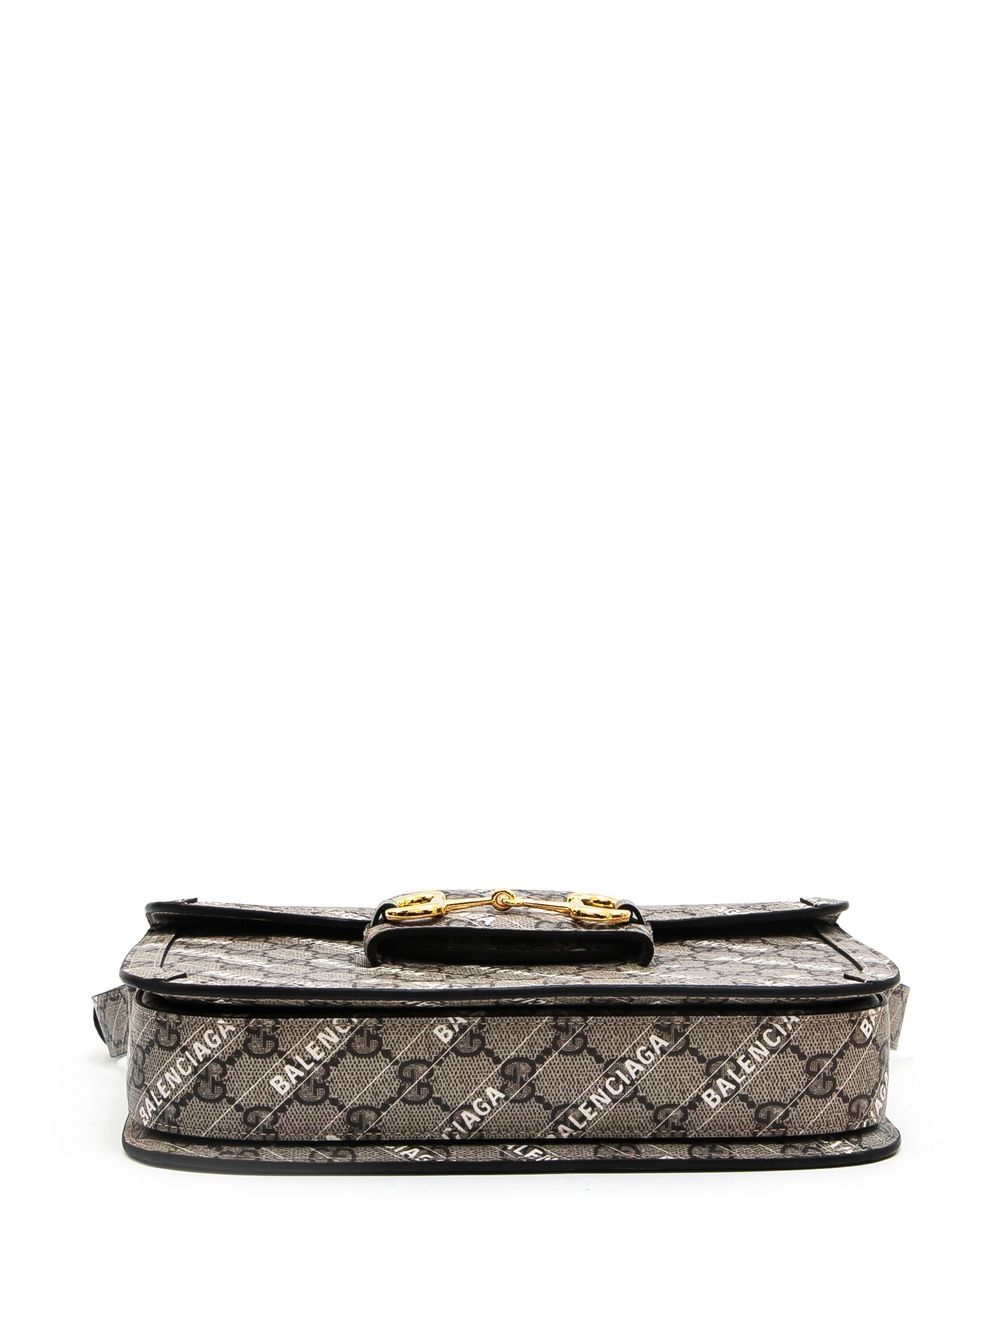 Gucci x Balenciaga Horsebit 1955 Shoulder Bag